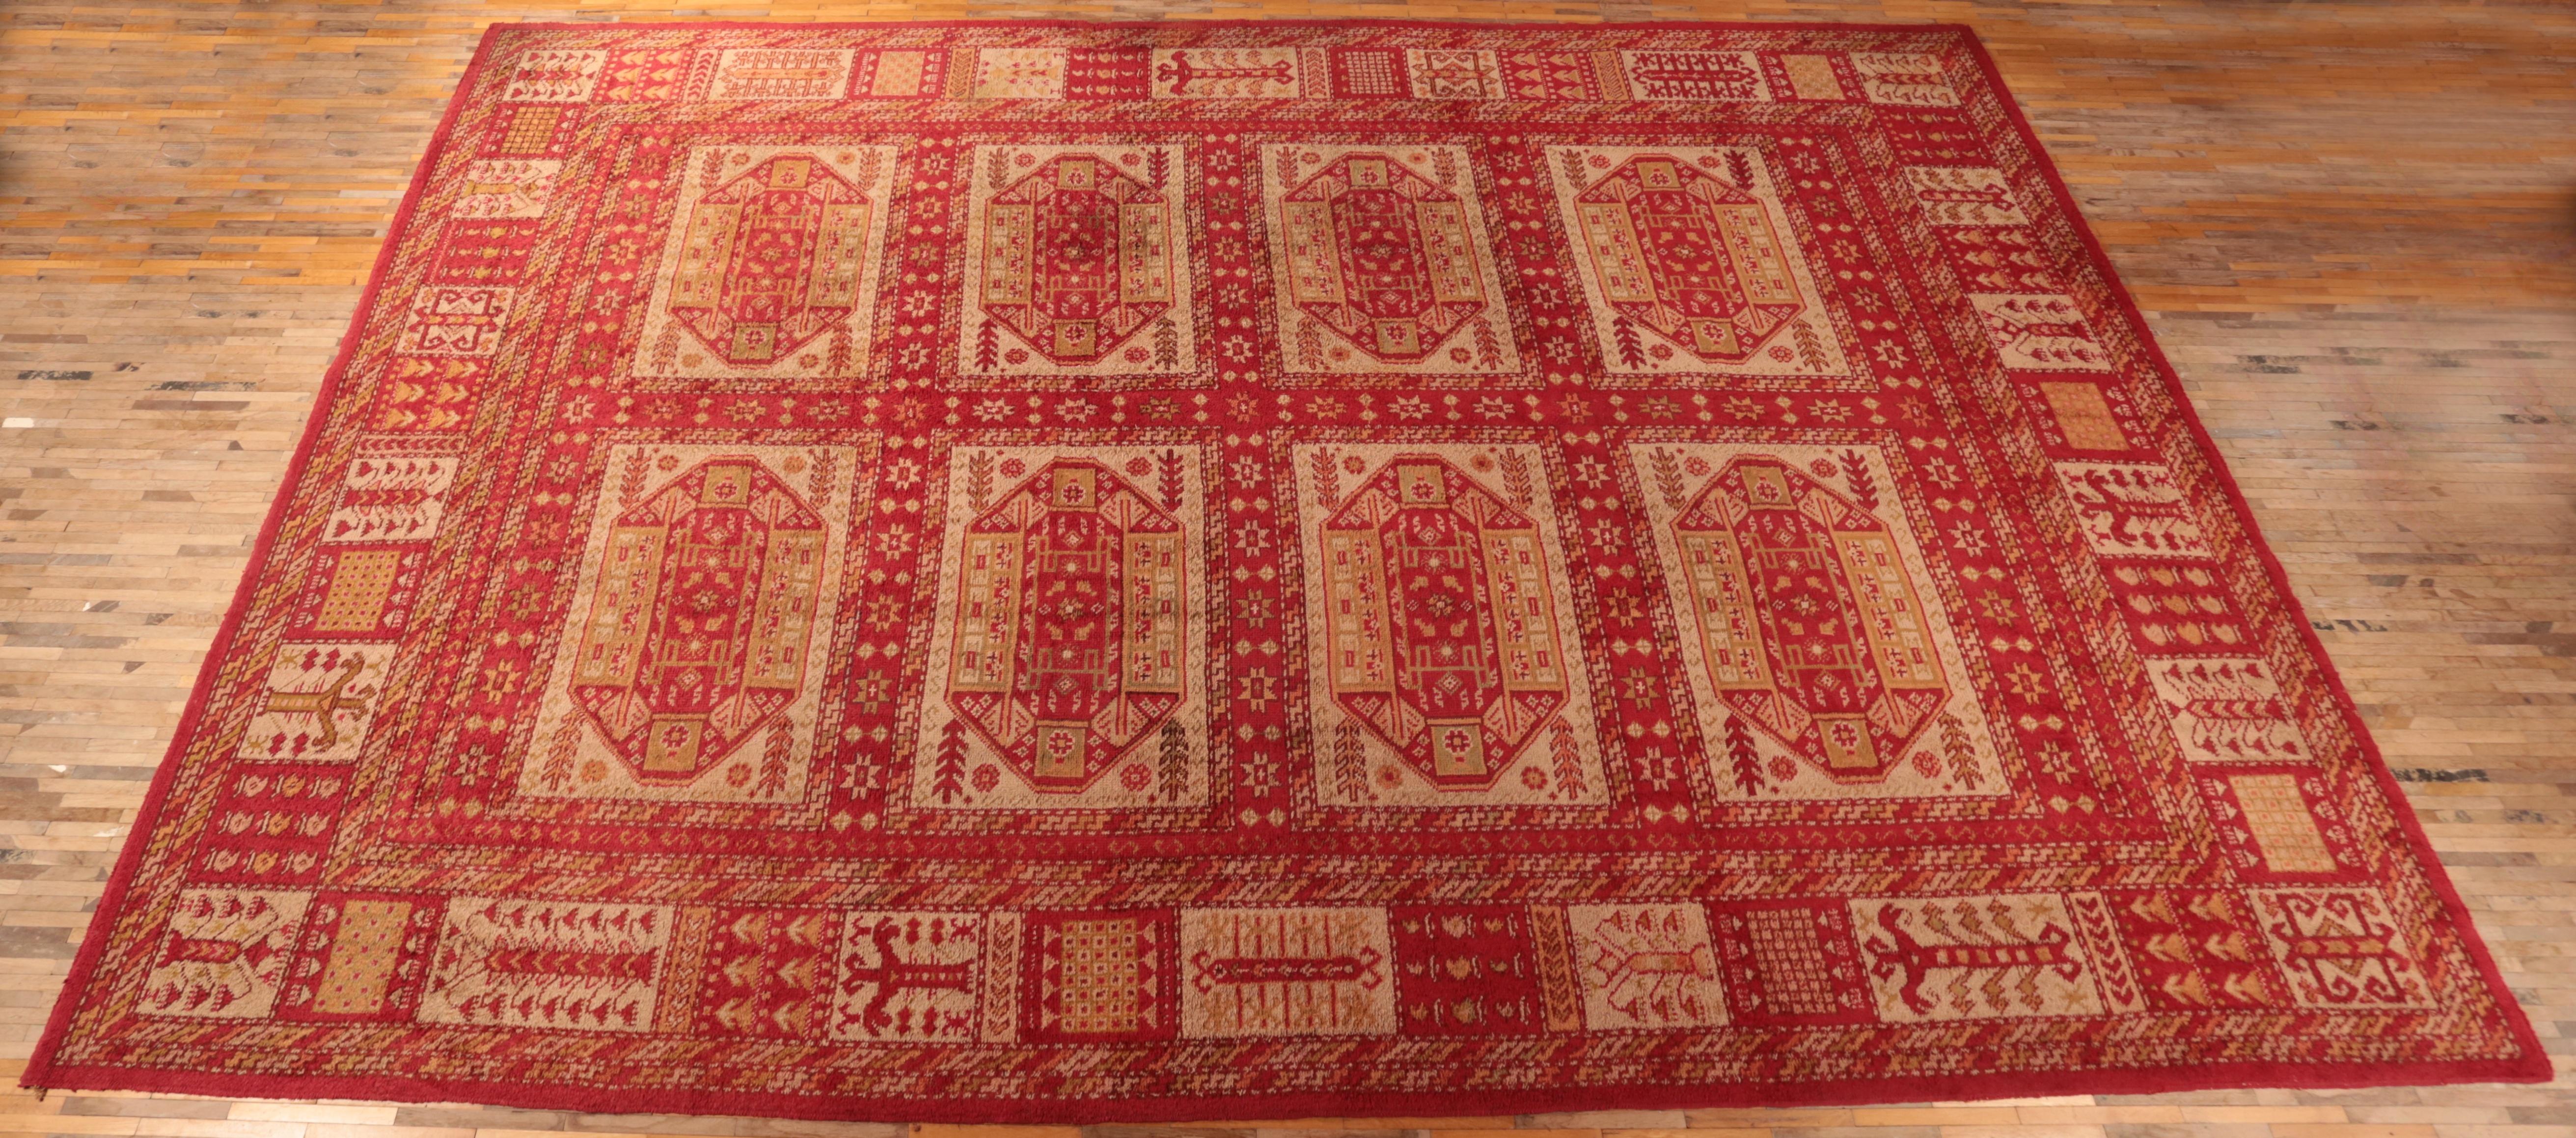 Oushak Antique Palace Turkish Ushak Carpet 555 X 375 cm For Sale